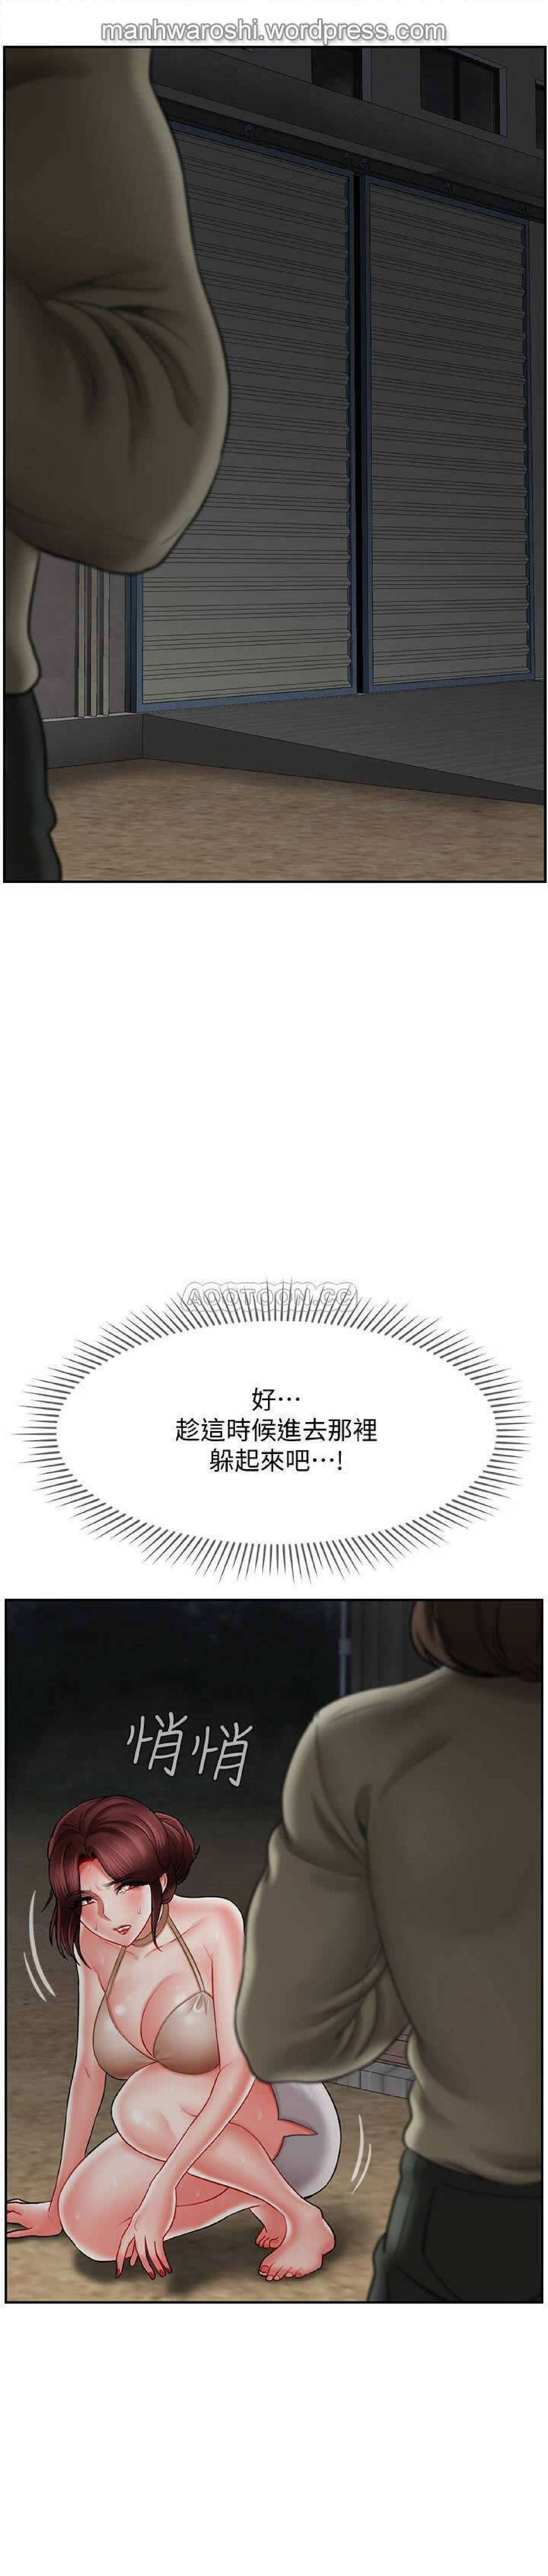 坏老师 | PHYSICAL CLASSROOM 11 [Chinese] Manhwa 